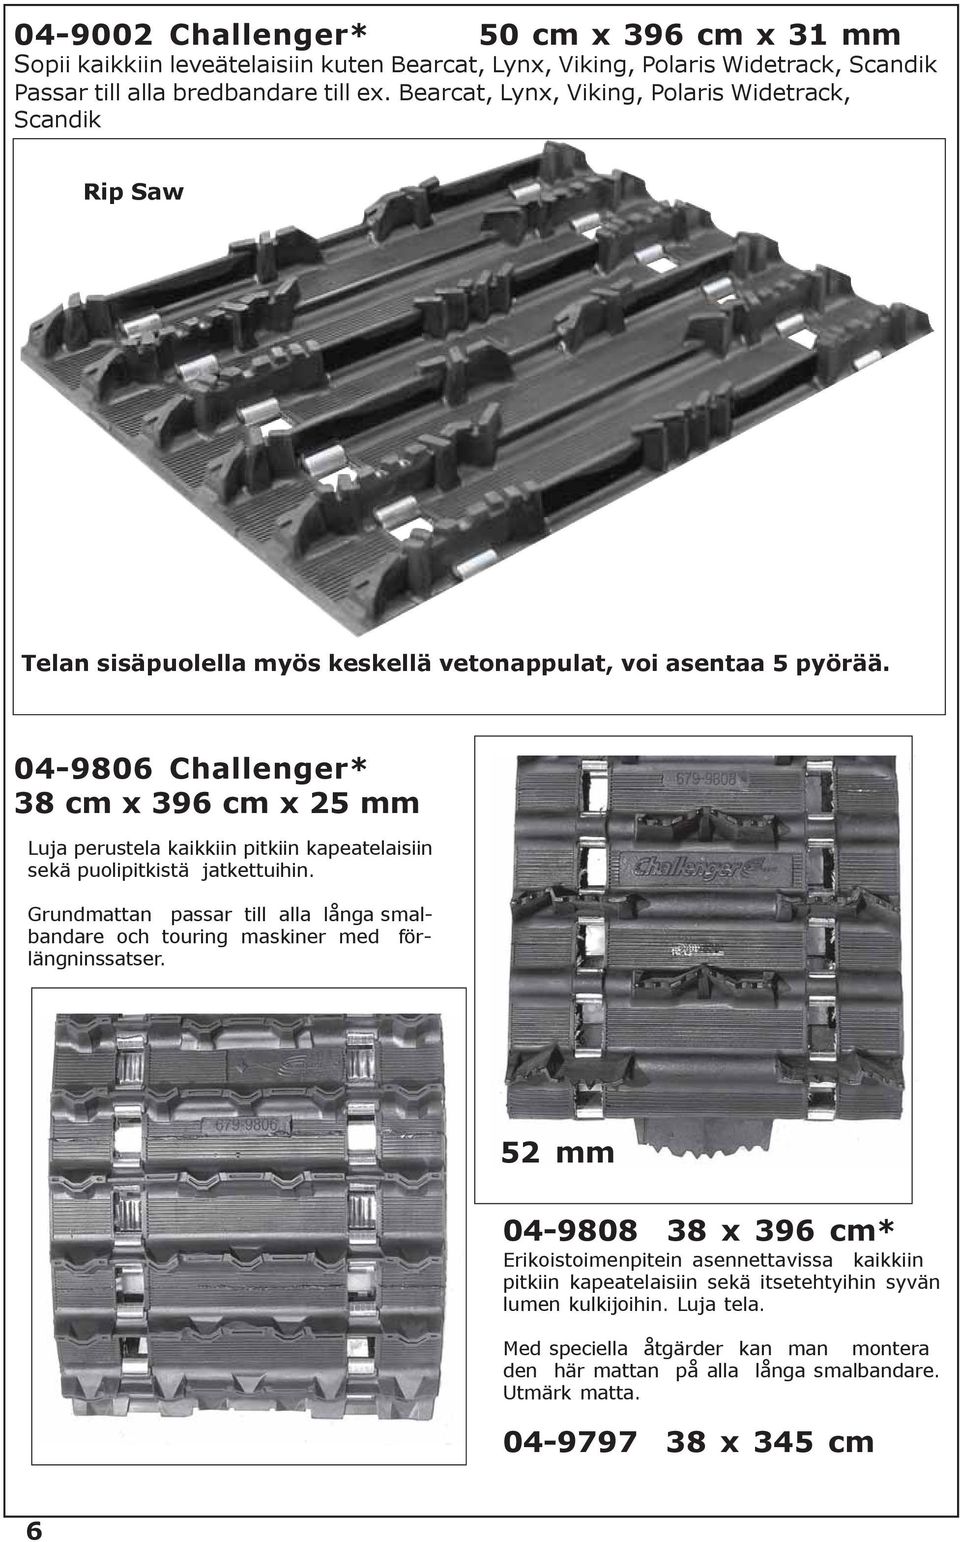 04-9806 Challenger* 38 cm x 396 cm x 25 mm Luja perustela kaikkiin pitkiin kapeatelaisiin sekä puolipitkistä jatkettuihin.